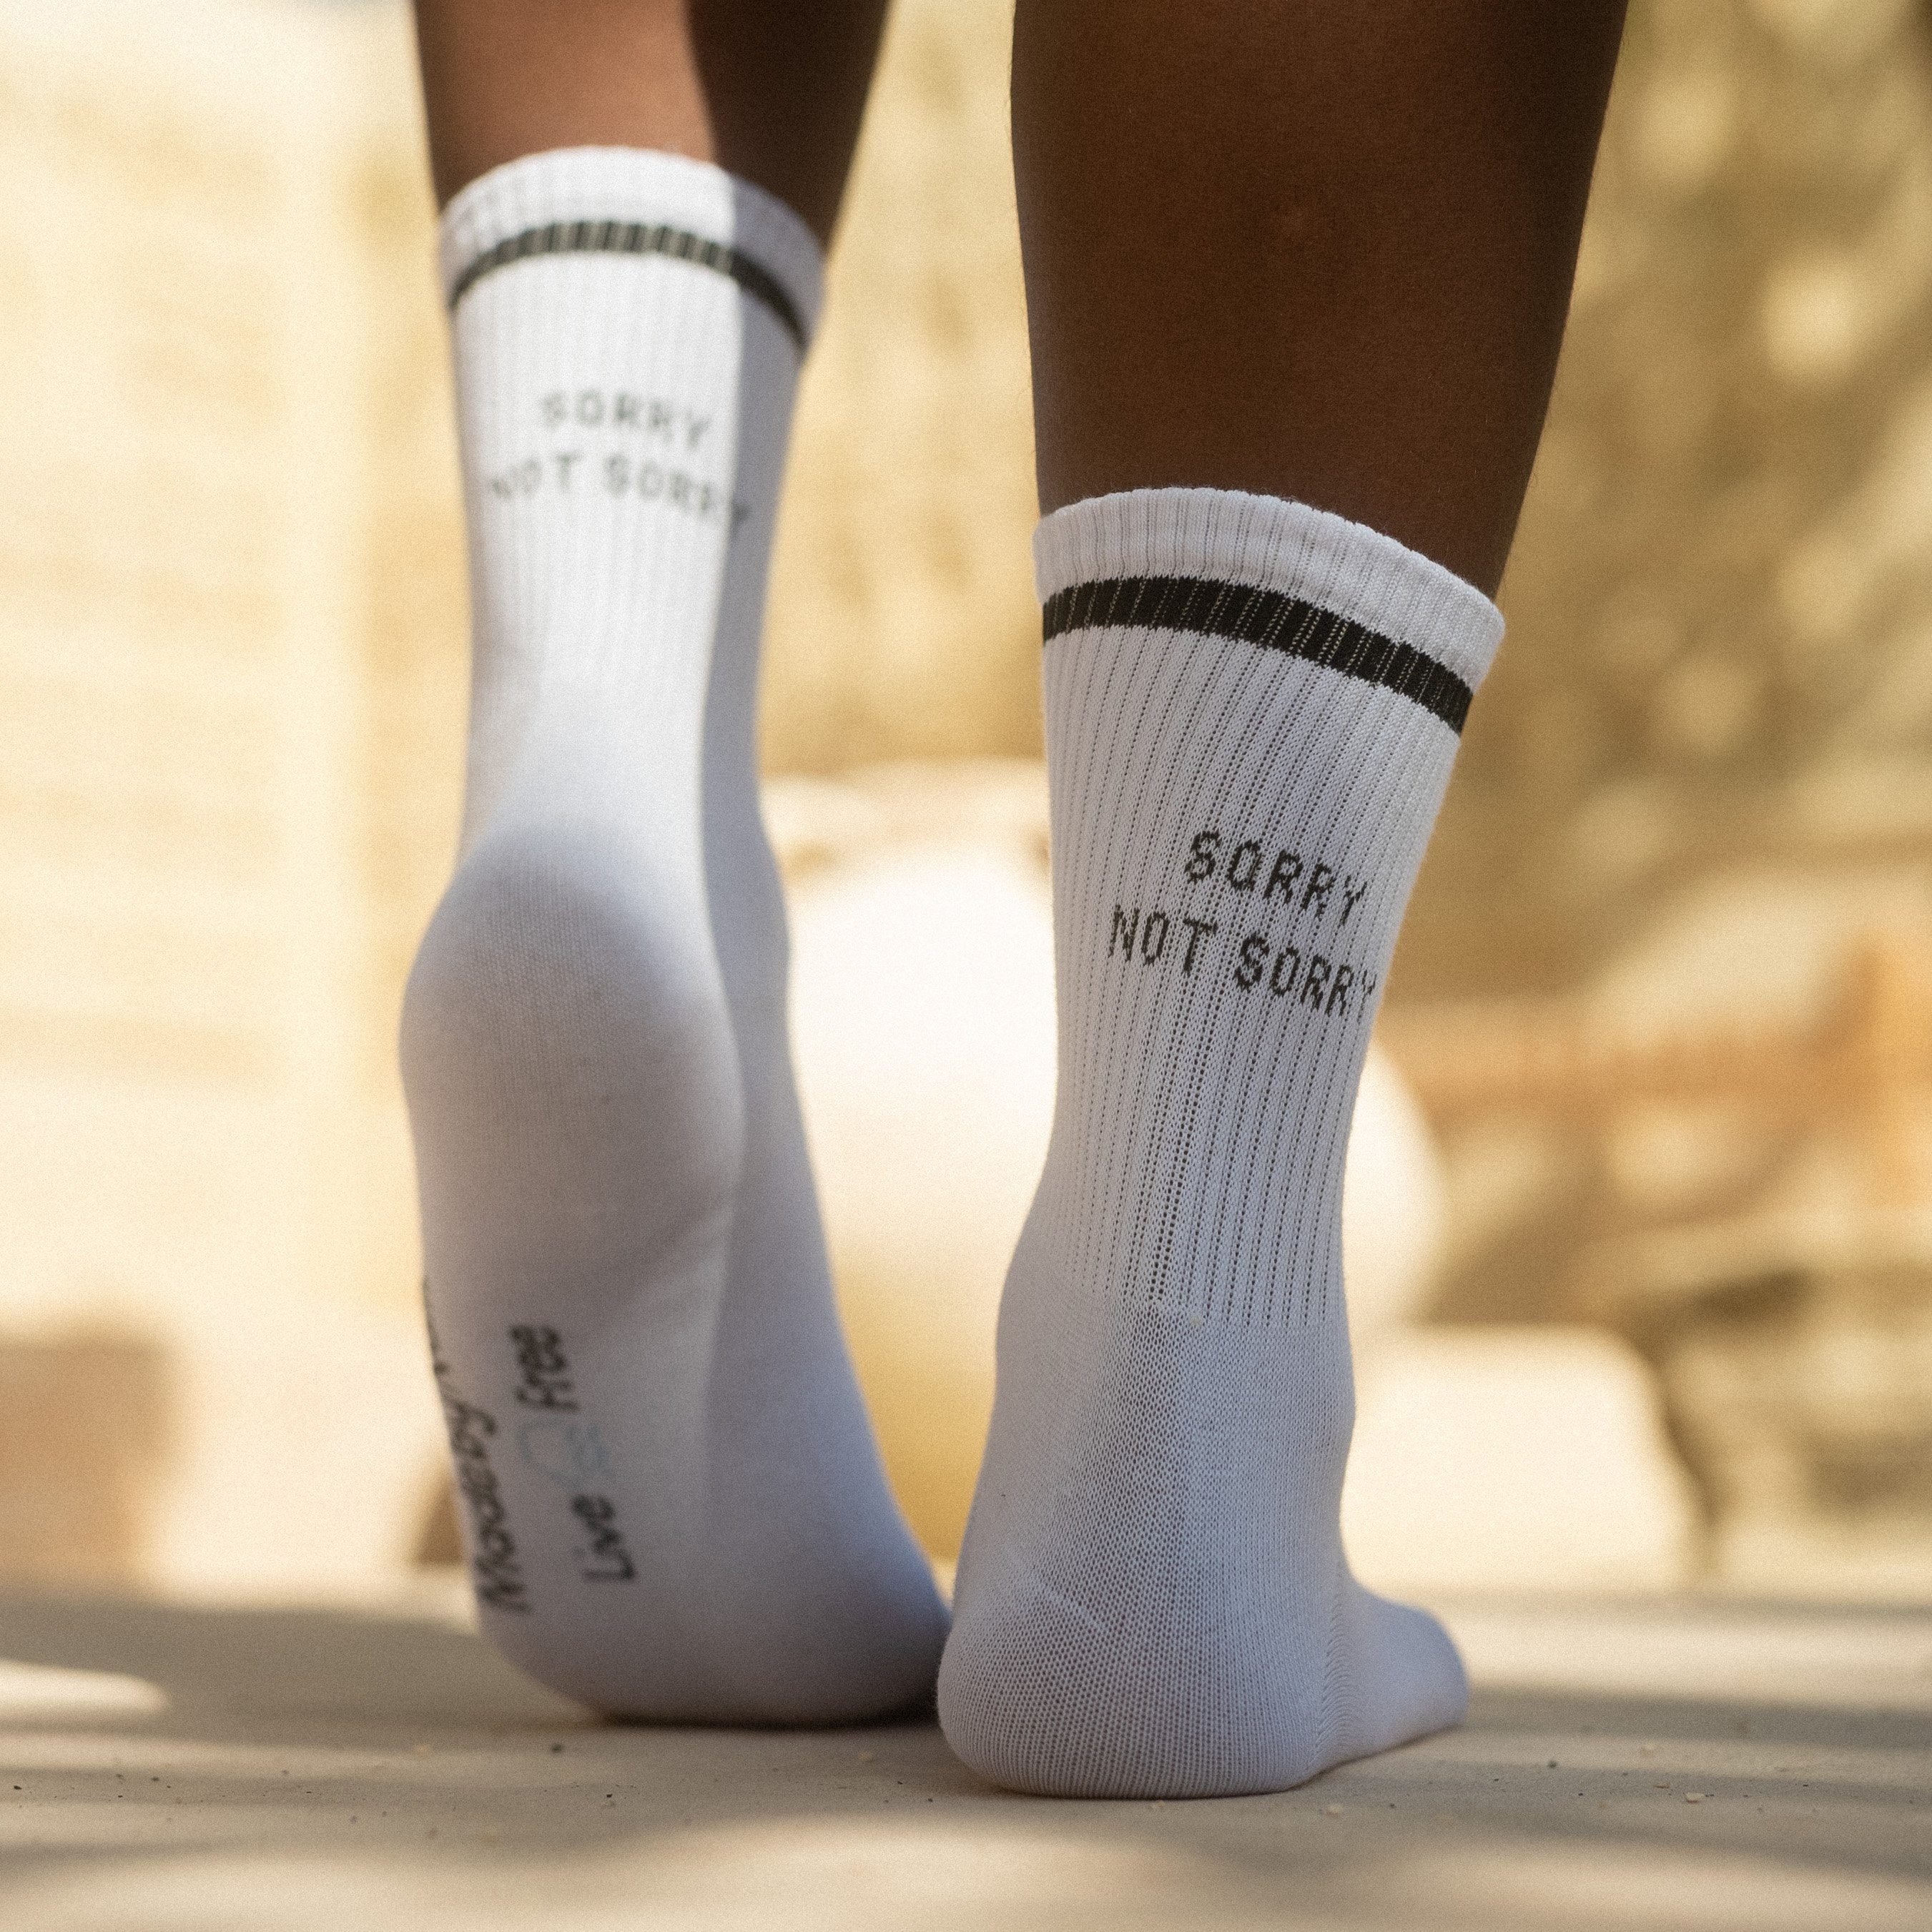 Made by Nami Tennissocken Weiße Tennissocken Atmungsaktive Crew Socks mit Sprüchen Retro Socken Lustige Socken mit Sprüchen Herren & Damen | Wandersocken